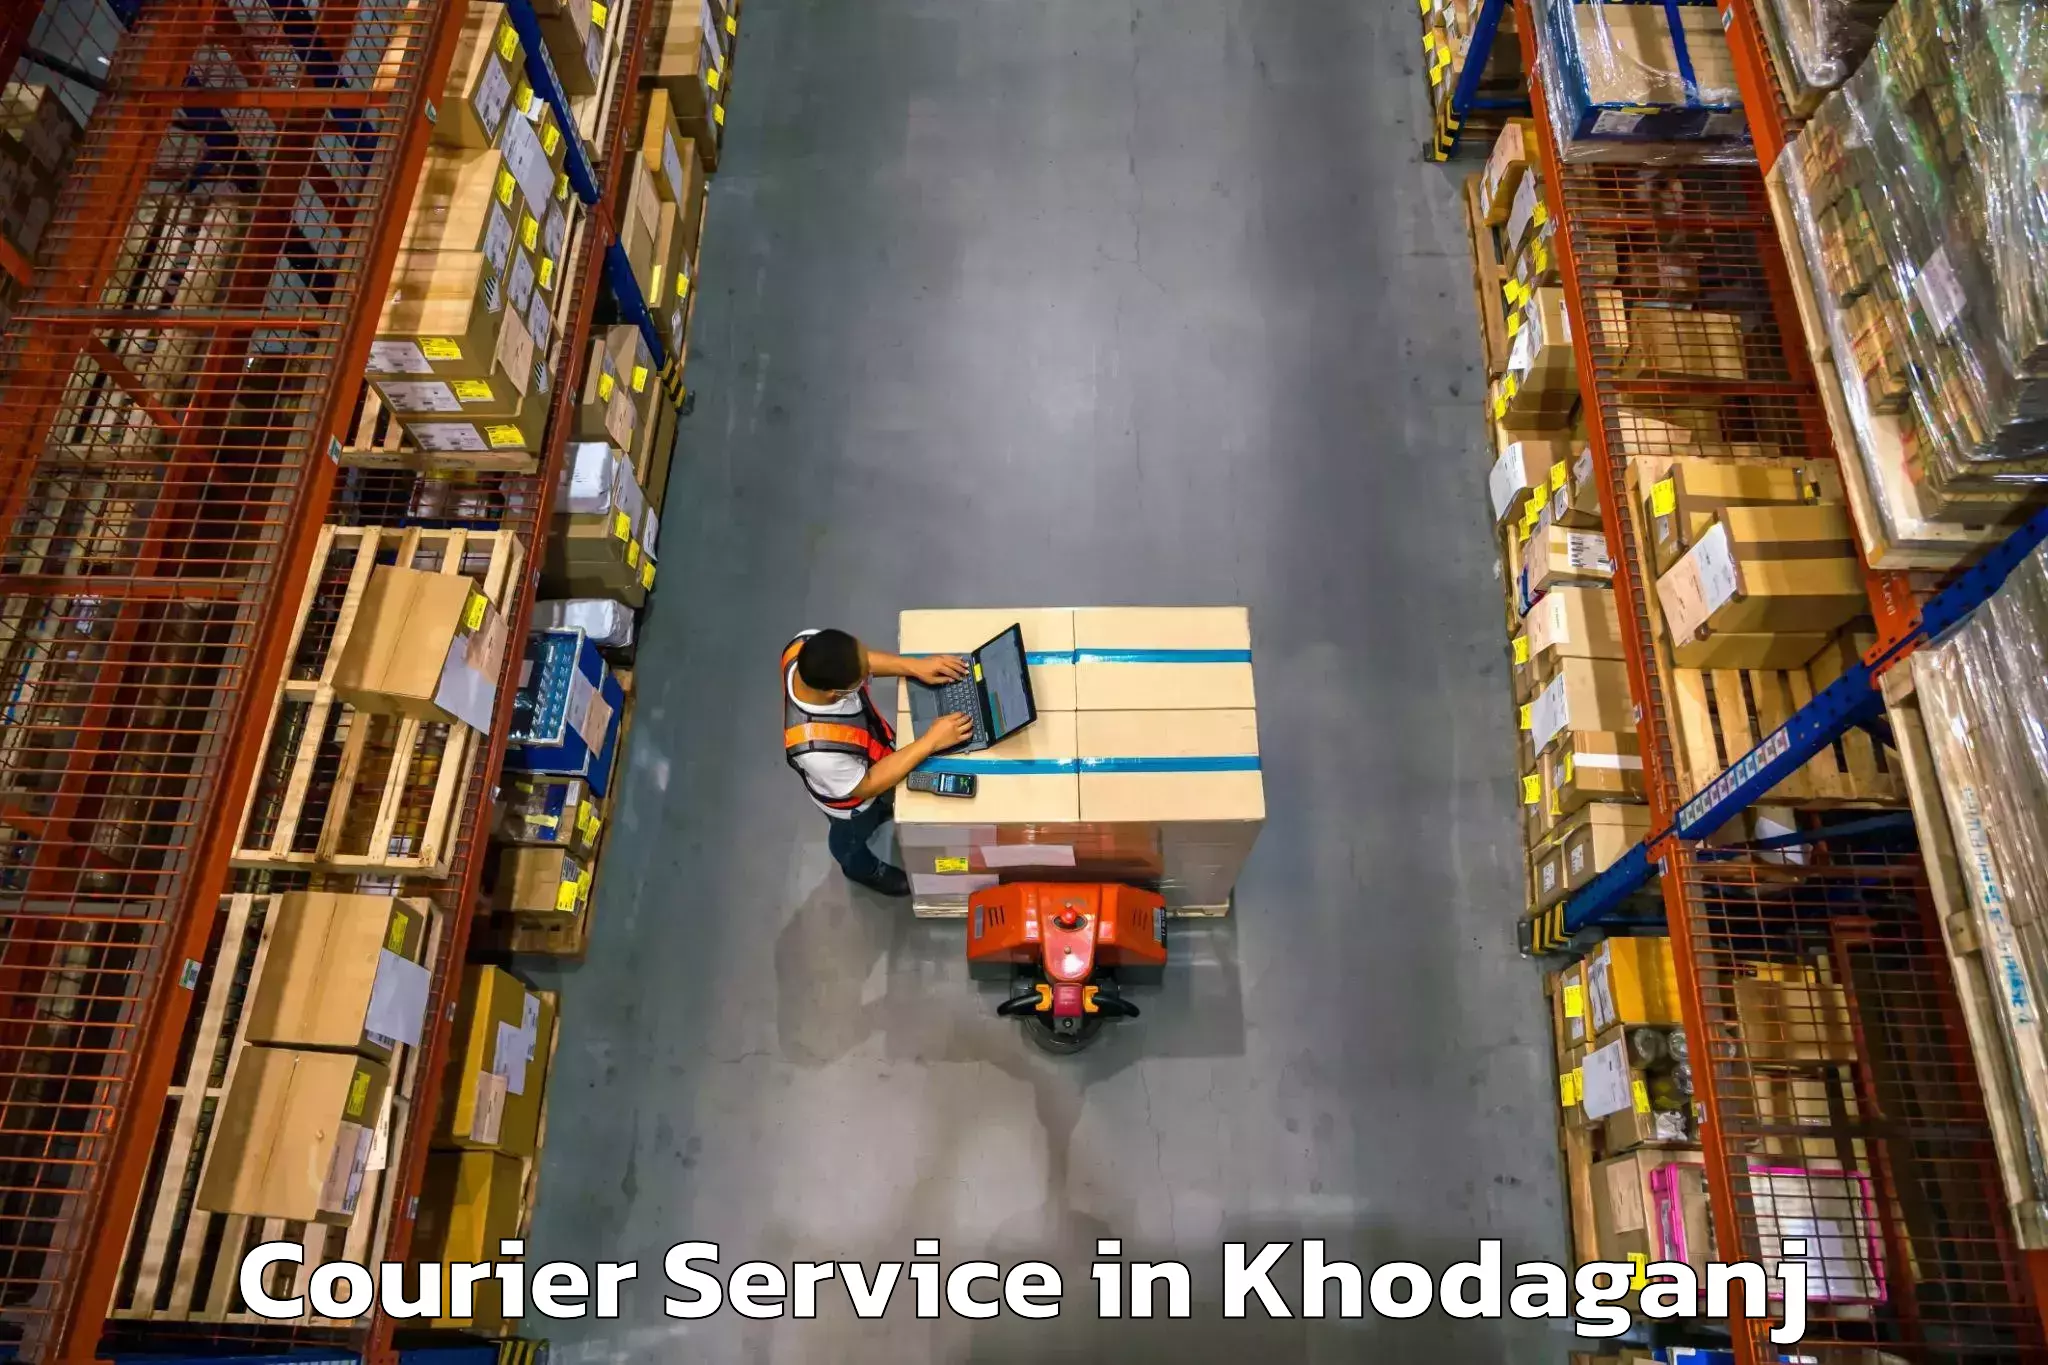 Regular parcel service in Khodaganj